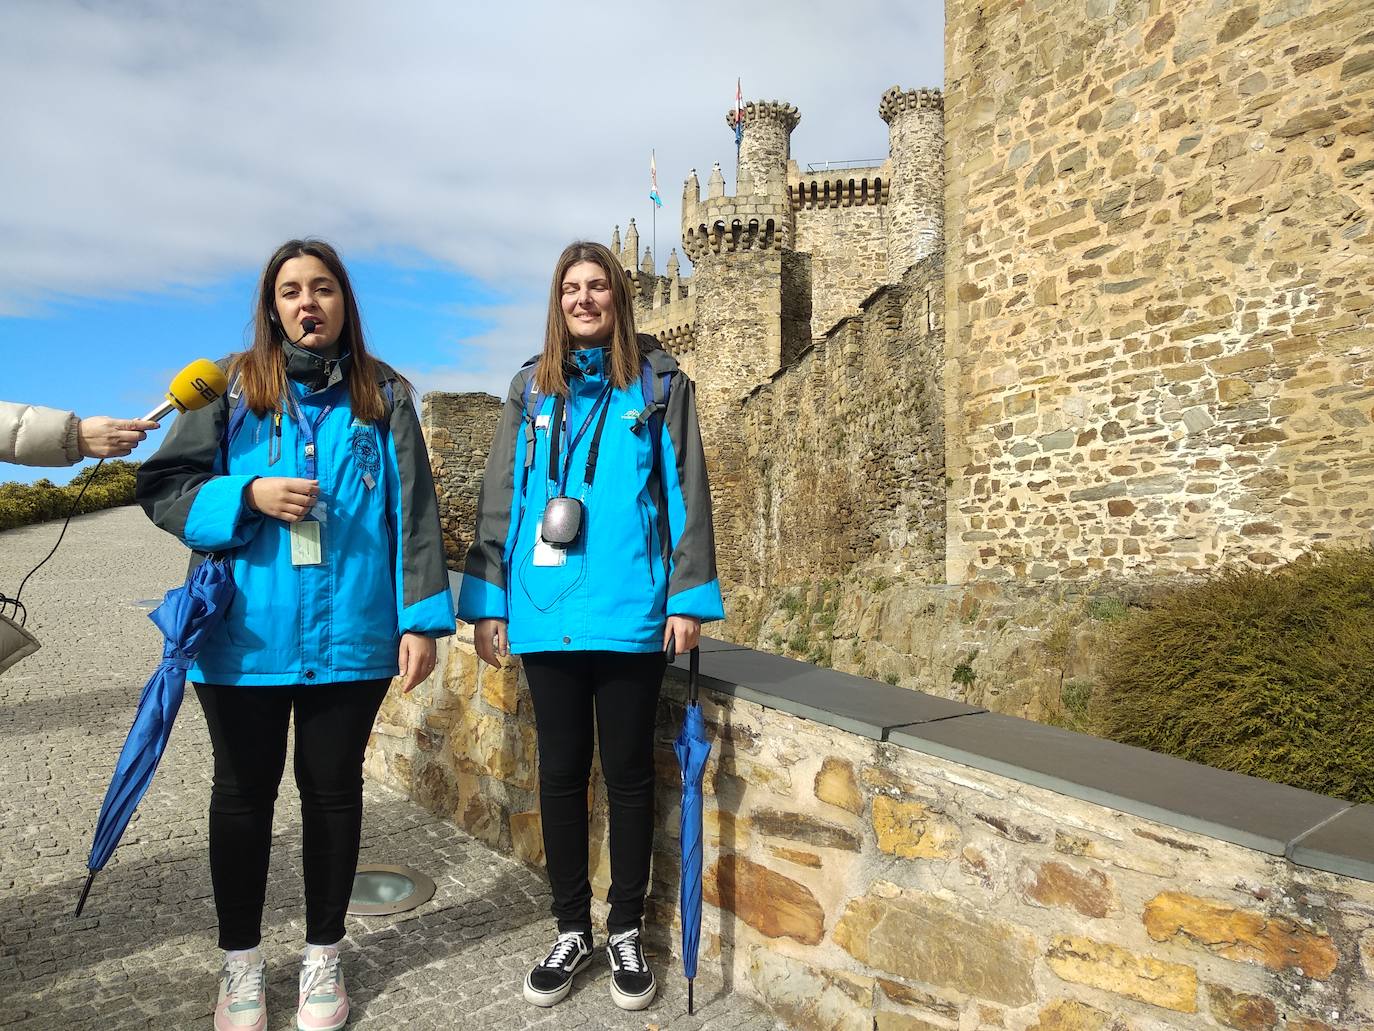 Visita guiada al Castillo de los Templarios de Ponferrada para conmemorar el primer año de Guías Bierzo.